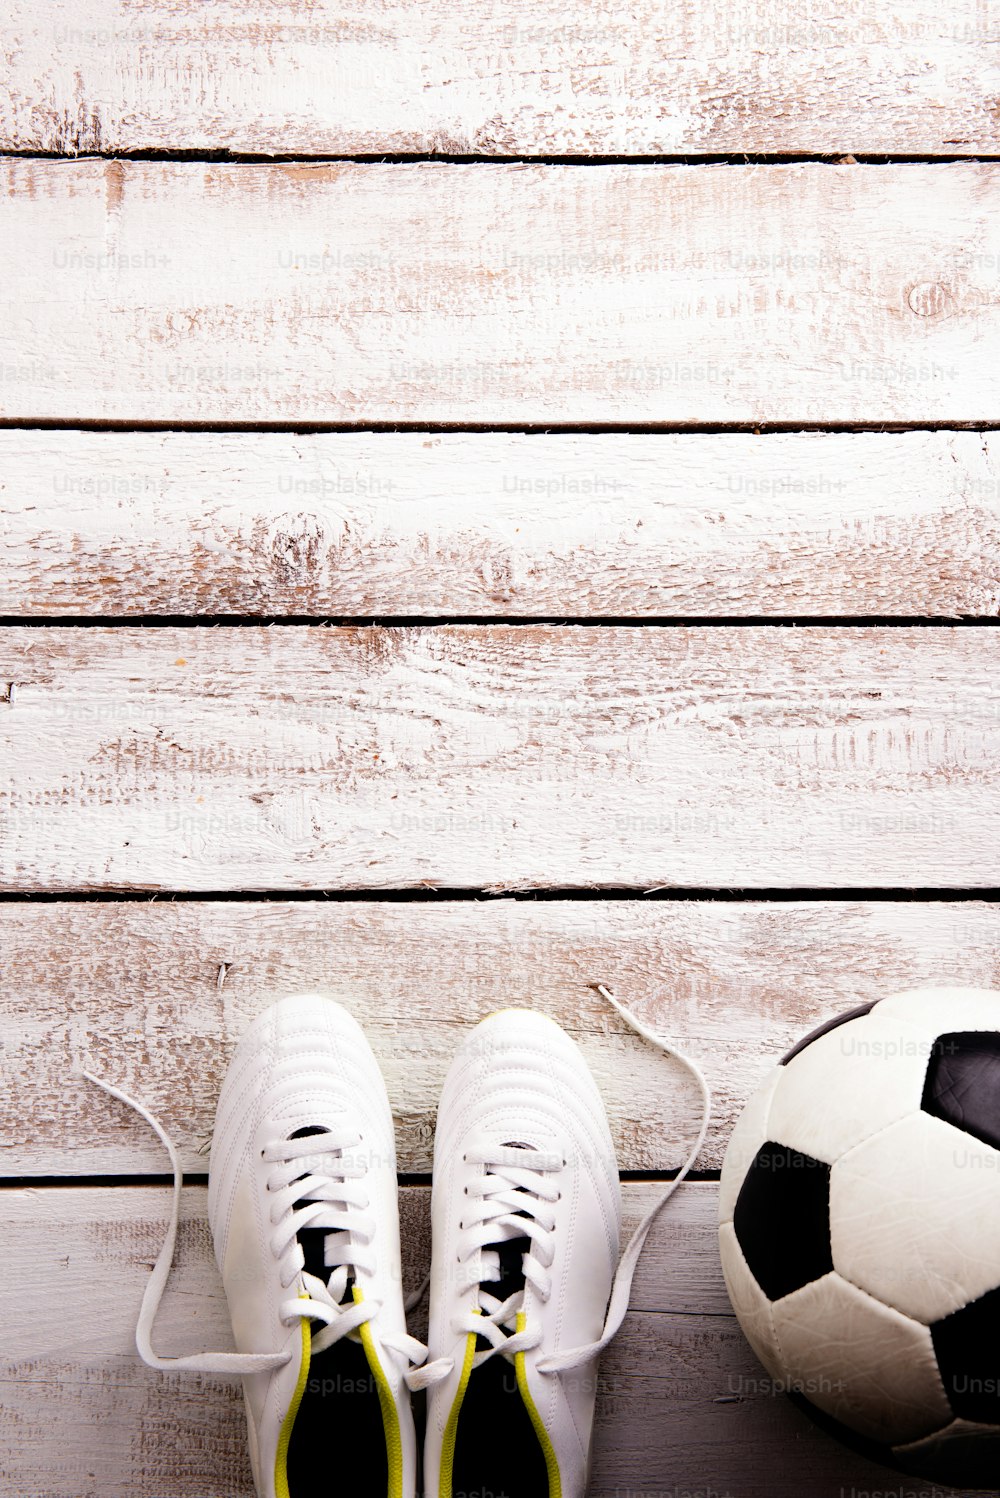 Bola de futebol, chuteiras contra o chão de madeira, estúdio filmado em fundo branco. Flat lay, espaço de cópia